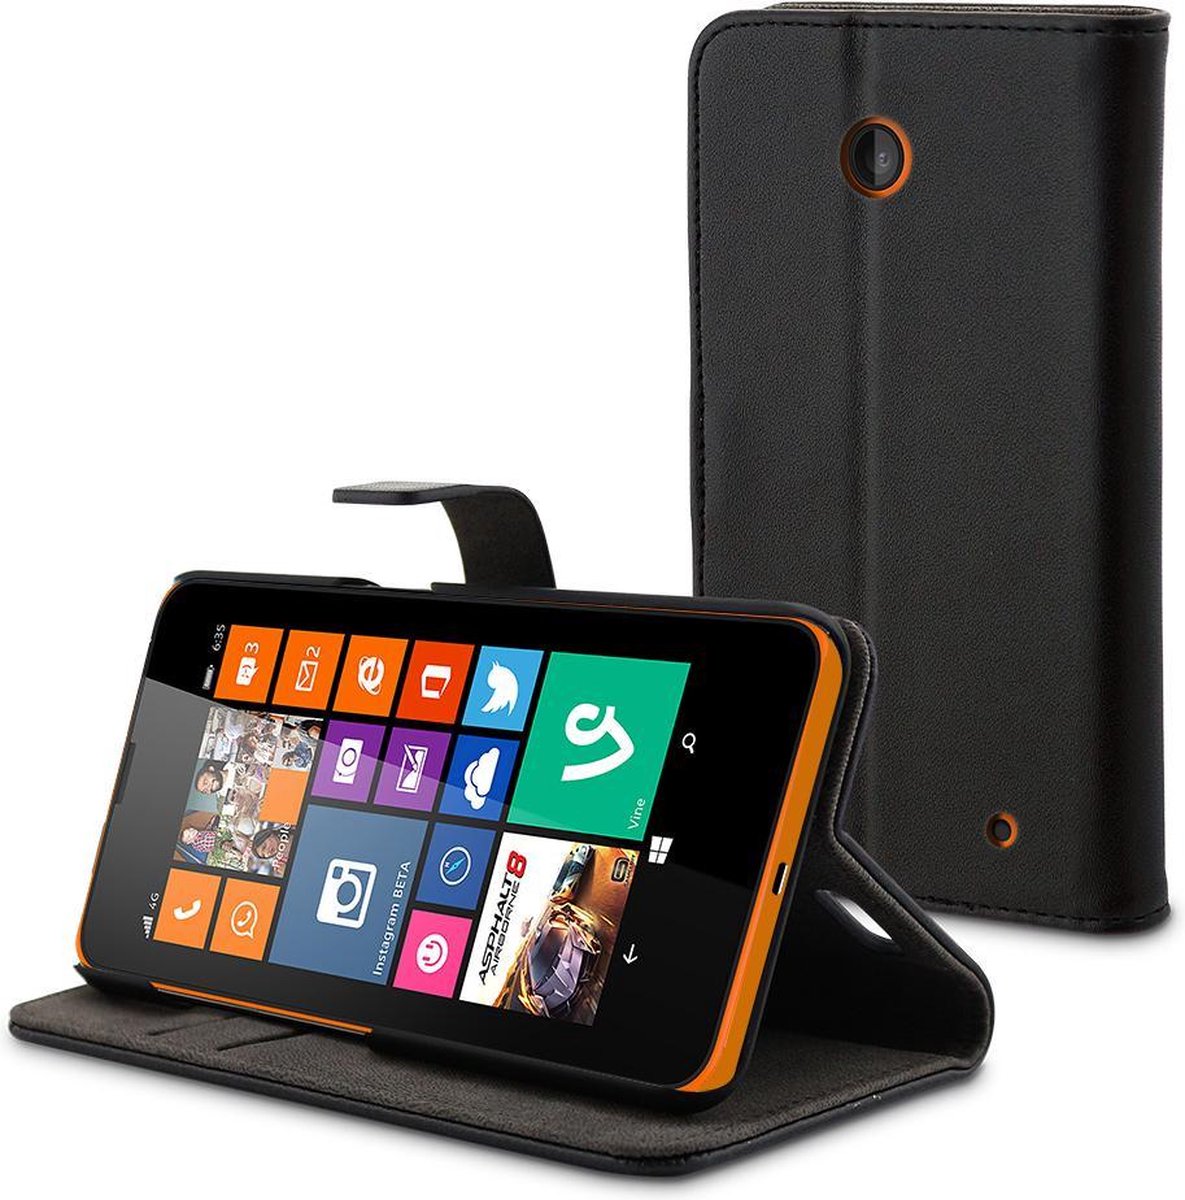 Muvit wallet tasje - zwart - voor Nokia Lumia 630/635